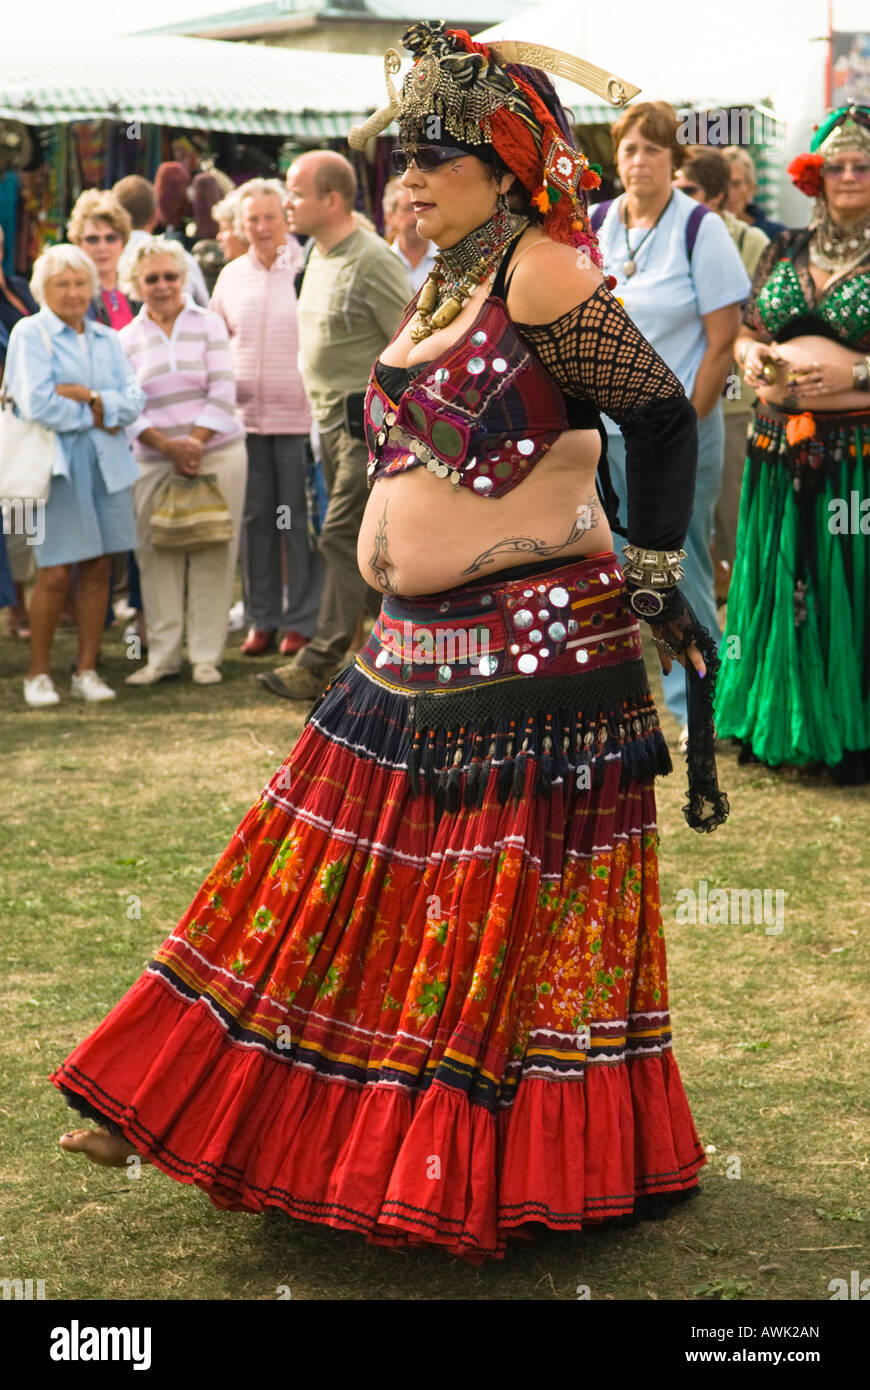 Swanage Folk Festival, ballerina del ventre grassa e sgargiante, abito spettacolare, troupe che si esibiscono in spazi espositivi, settembre,Swanage, Dorset, Regno Unito, Foto Stock